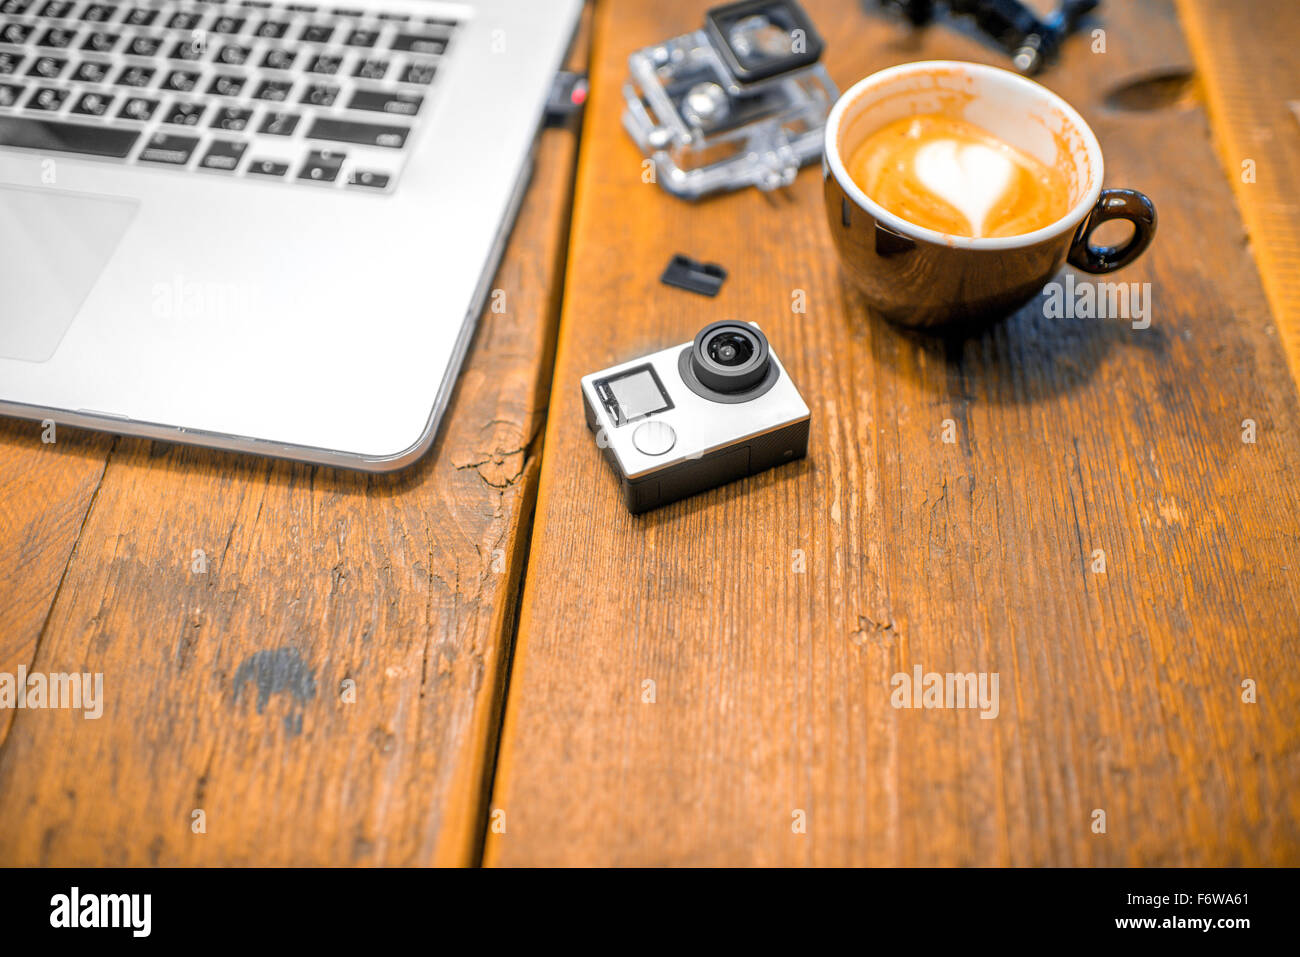 Petite action caméra vidéo avec coffe cup et ordinateur portable sur la table en bois Banque D'Images